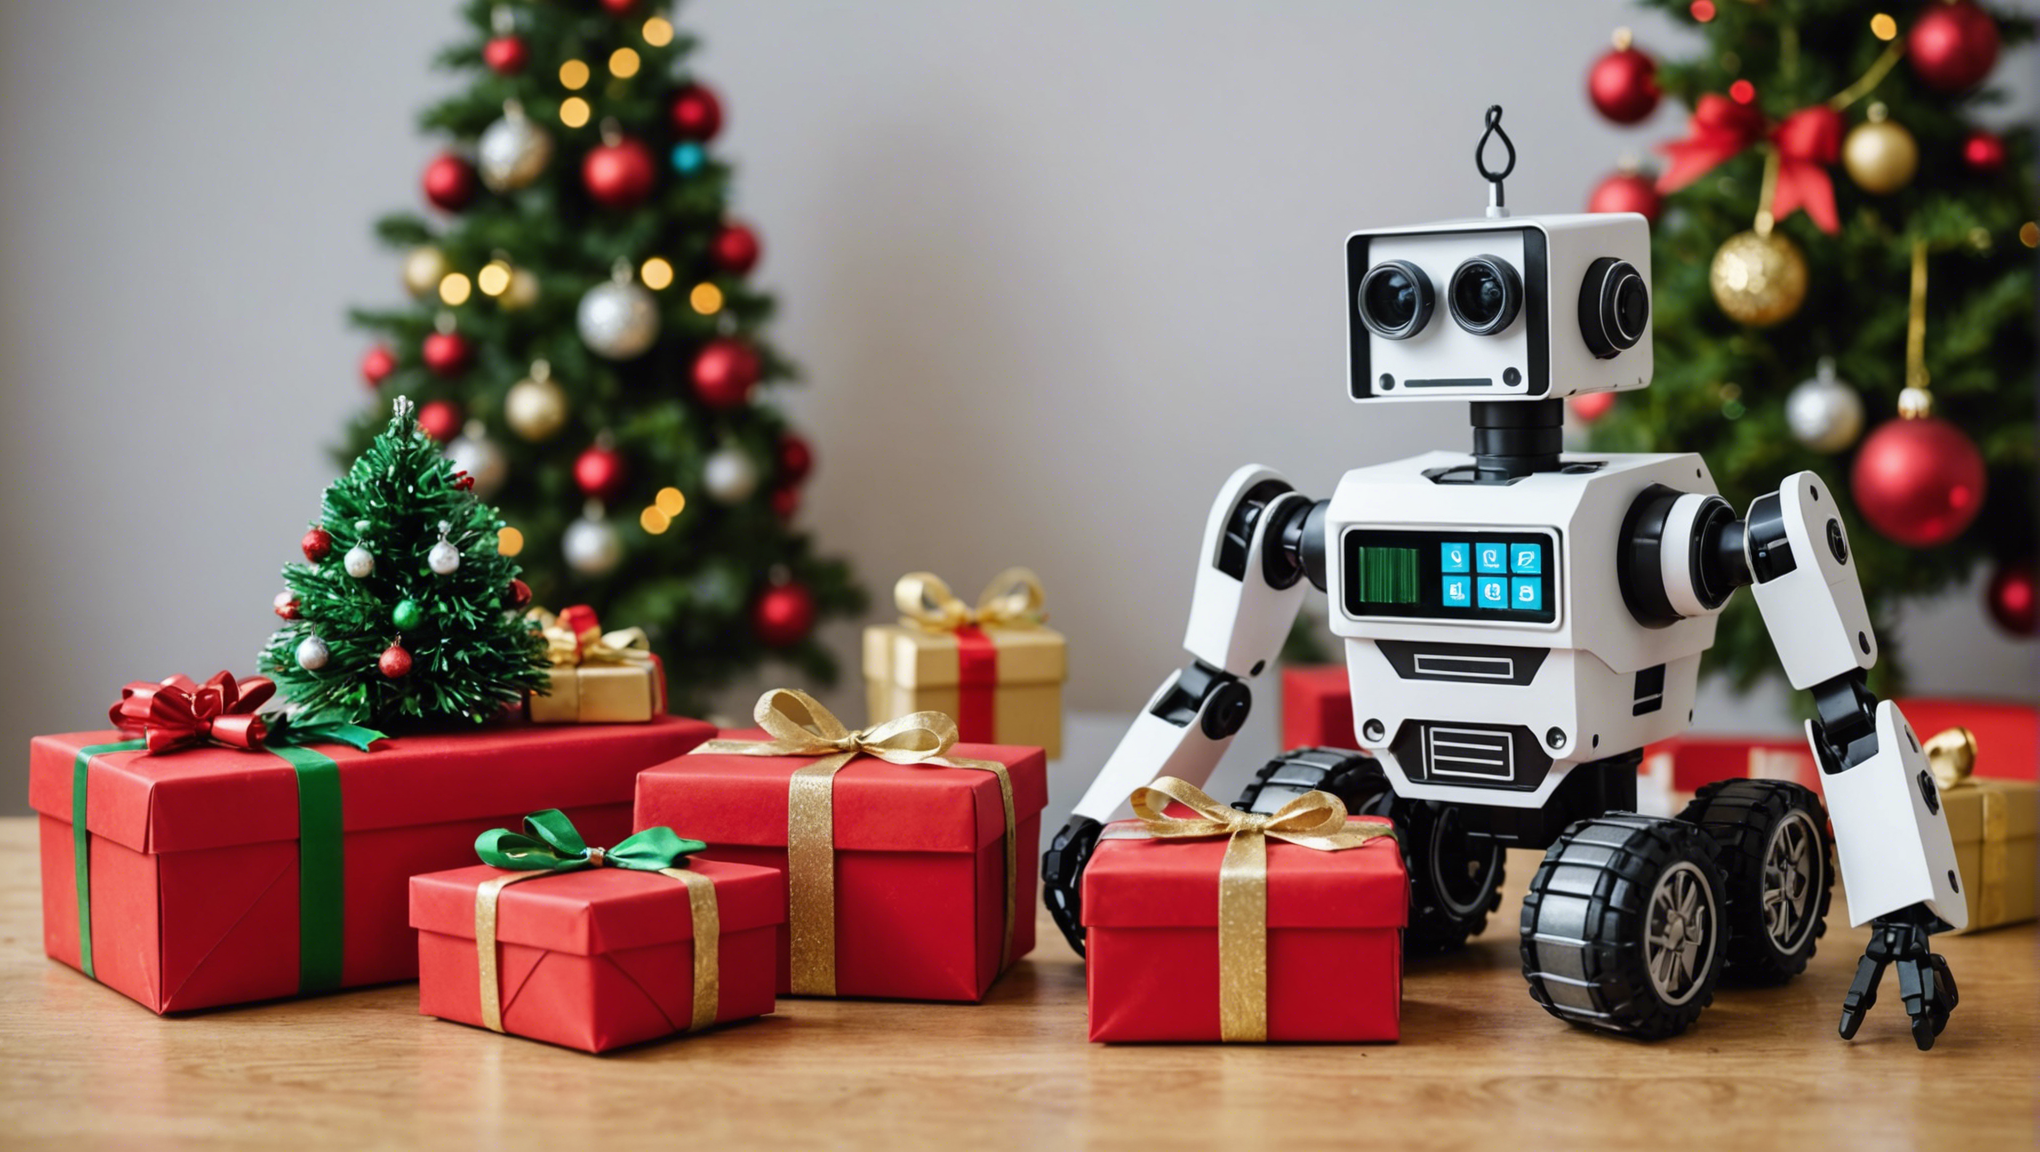 découvrez des idées de cadeaux diy en robotique pour noël 2021 et offrez des créations uniques et innovantes à vos proches passionnés de technologie.